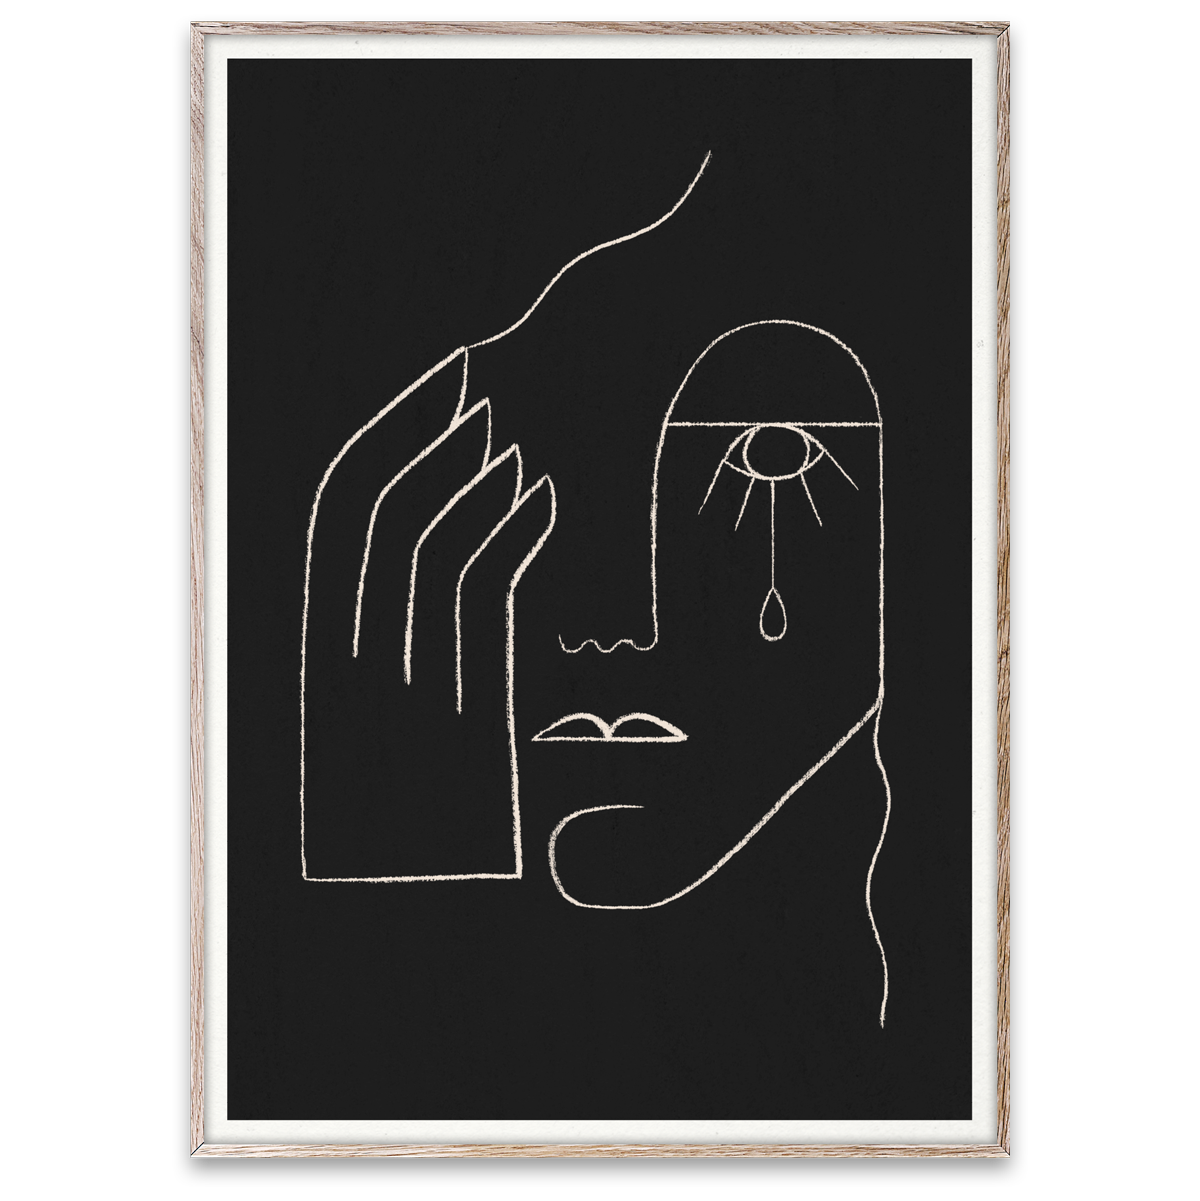 Single Tear – By Kit Agar